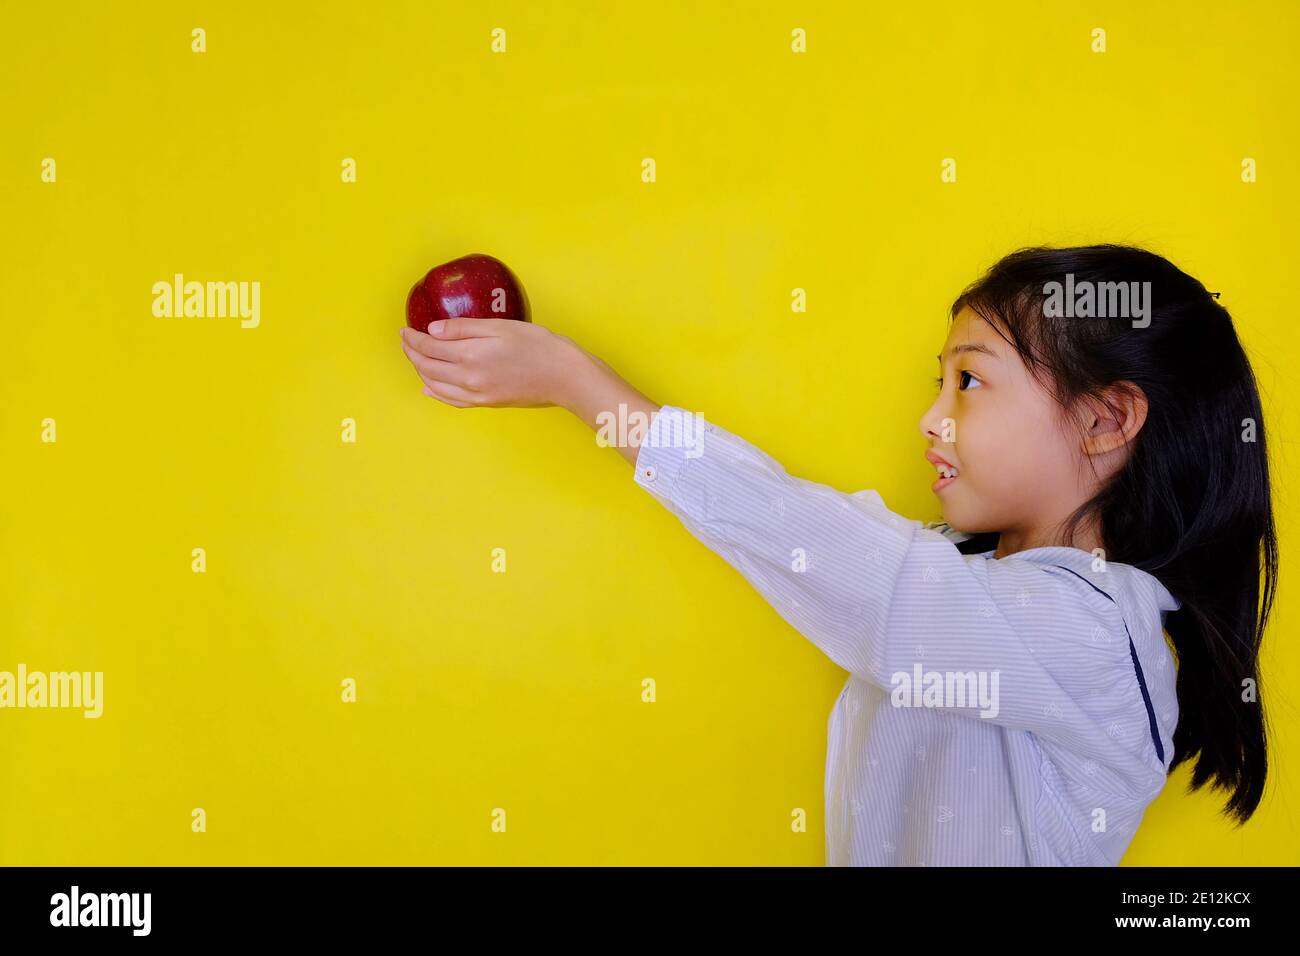 Une jolie jeune fille asiatique à l'école, donnant une pomme rouge à son professeur comme cadeau, souriant. Arrière-plan jaune vif. Banque D'Images